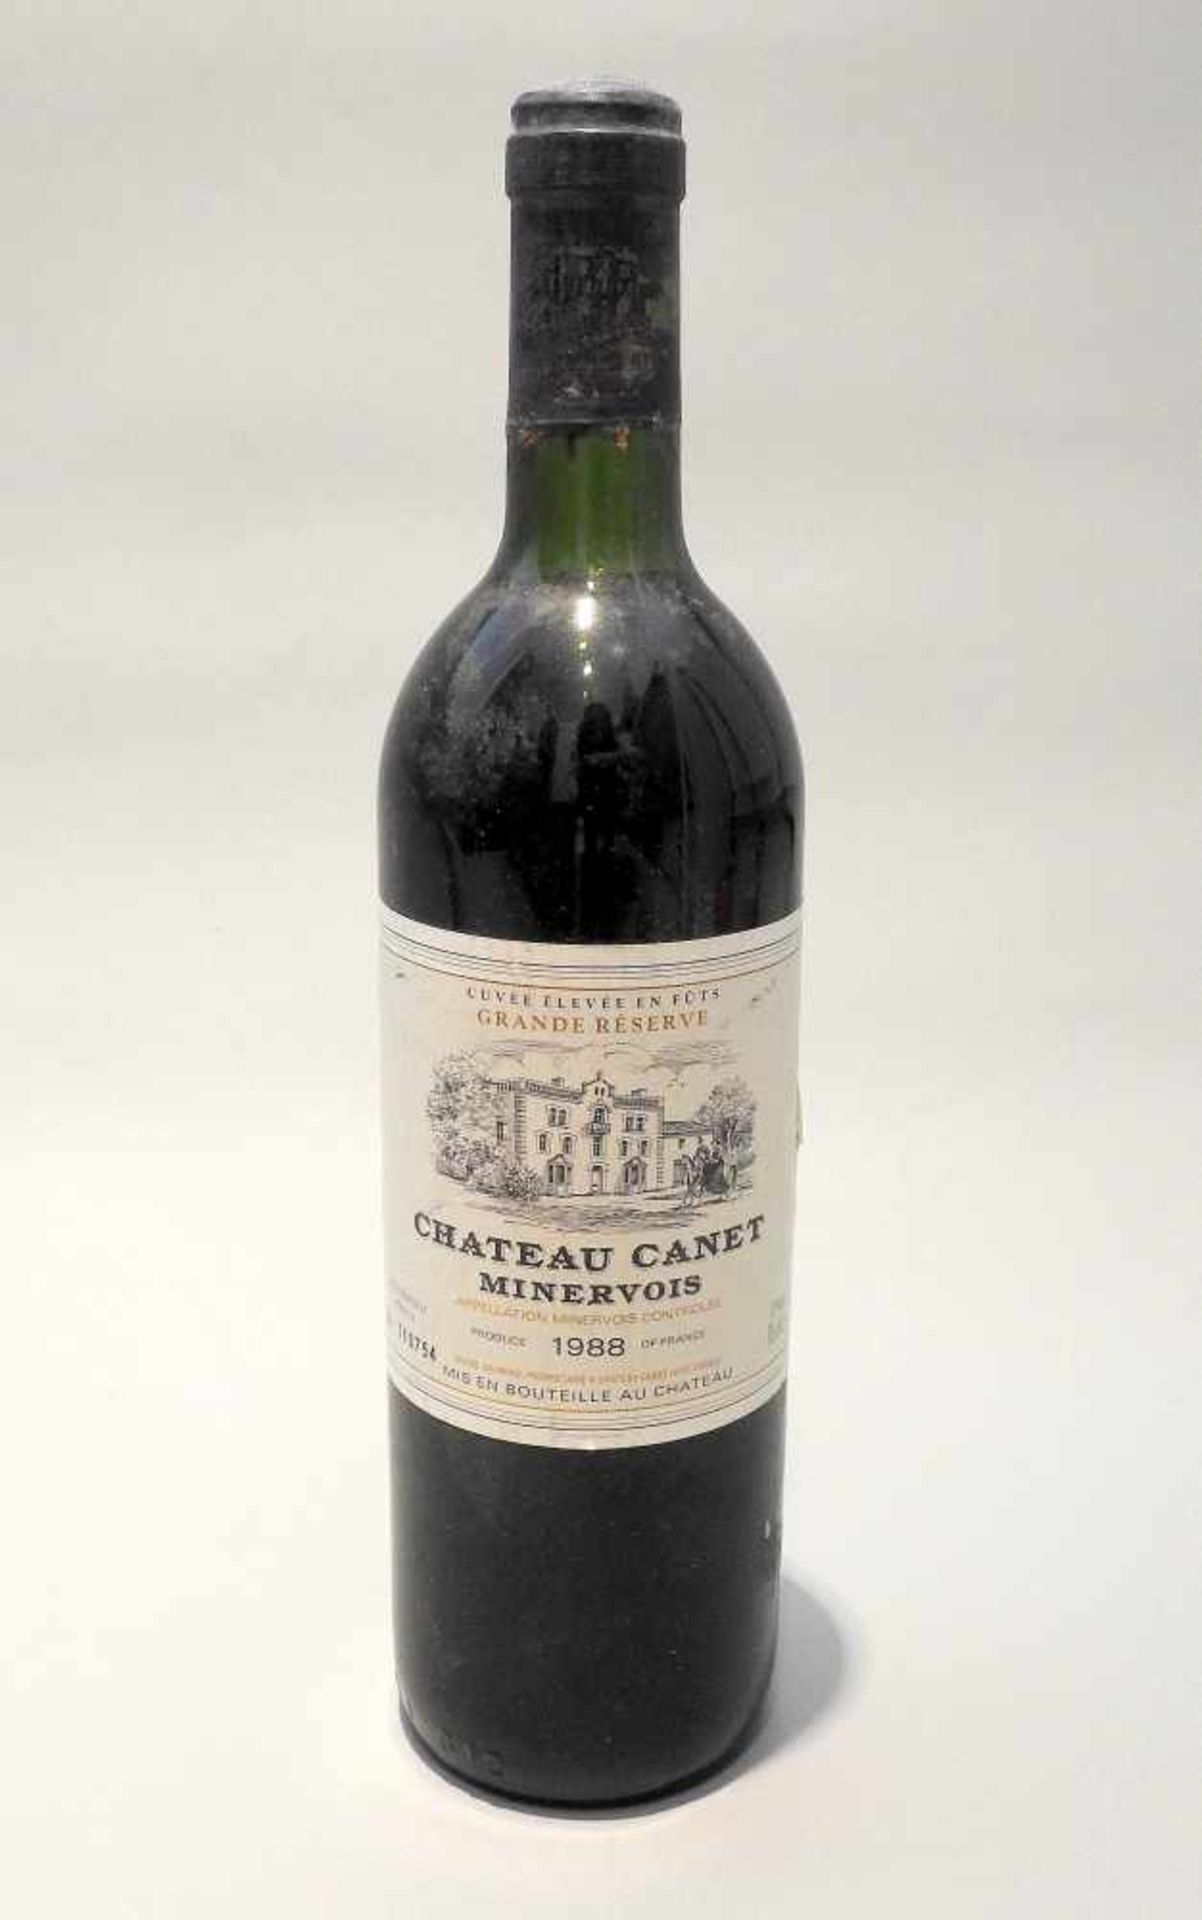 Cuvée élevée en Fûts, Grande RéserveChâteau Canet, Jahrgang 1988, Inhalt 750 ml.